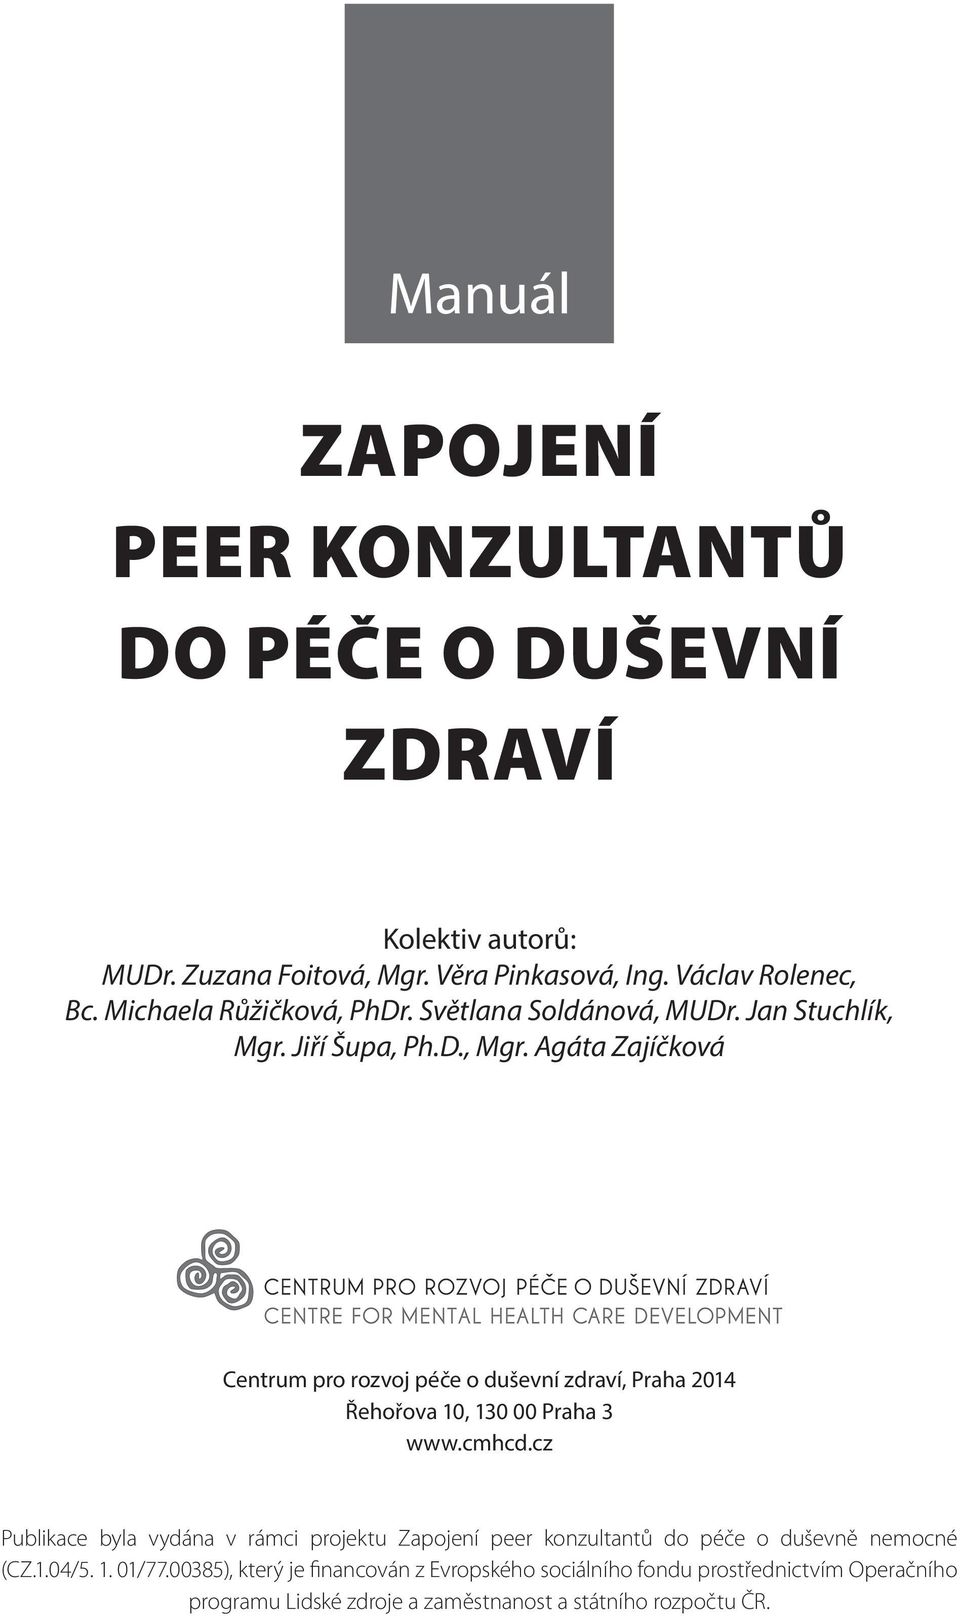 Jiří Šupa, Ph.D., Mgr. Agáta Zajíčková Centrum pro rozvoj péče o duševní zdraví, Praha 2014 Řehořova 10, 130 00 Praha 3 www.cmhcd.